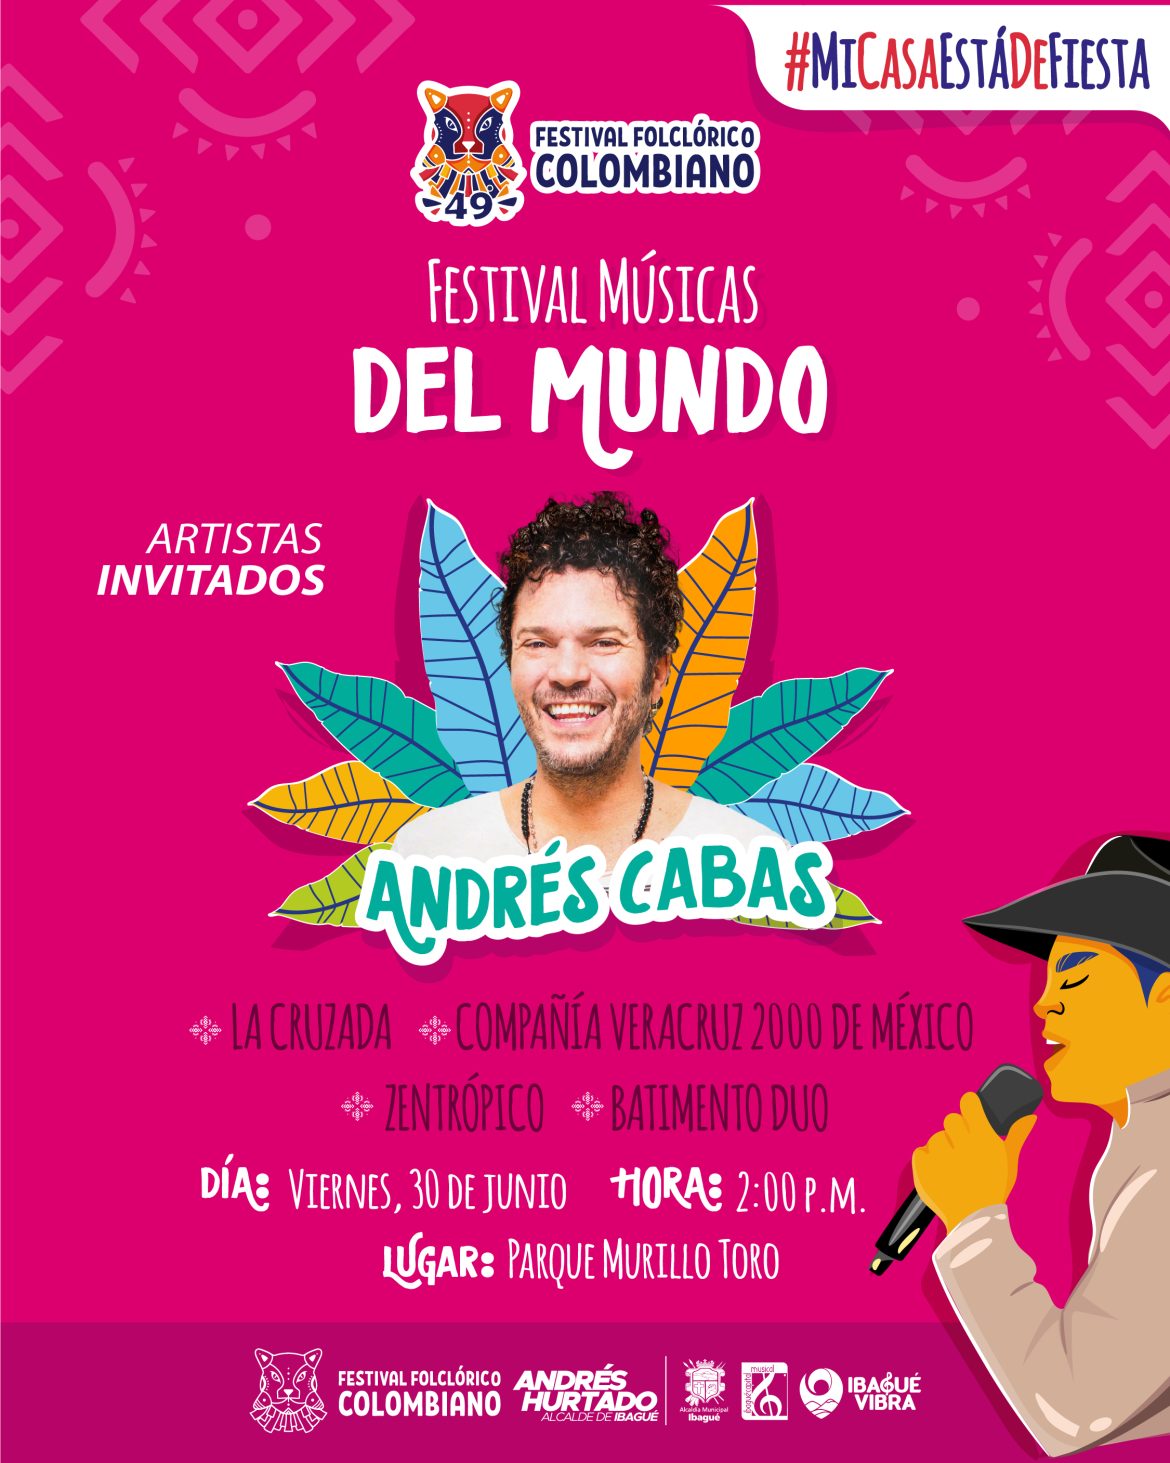 Ven a Ibagué y vive el Festival Folclórico Colombiano, porque #MiCasaEstáDeFiesta